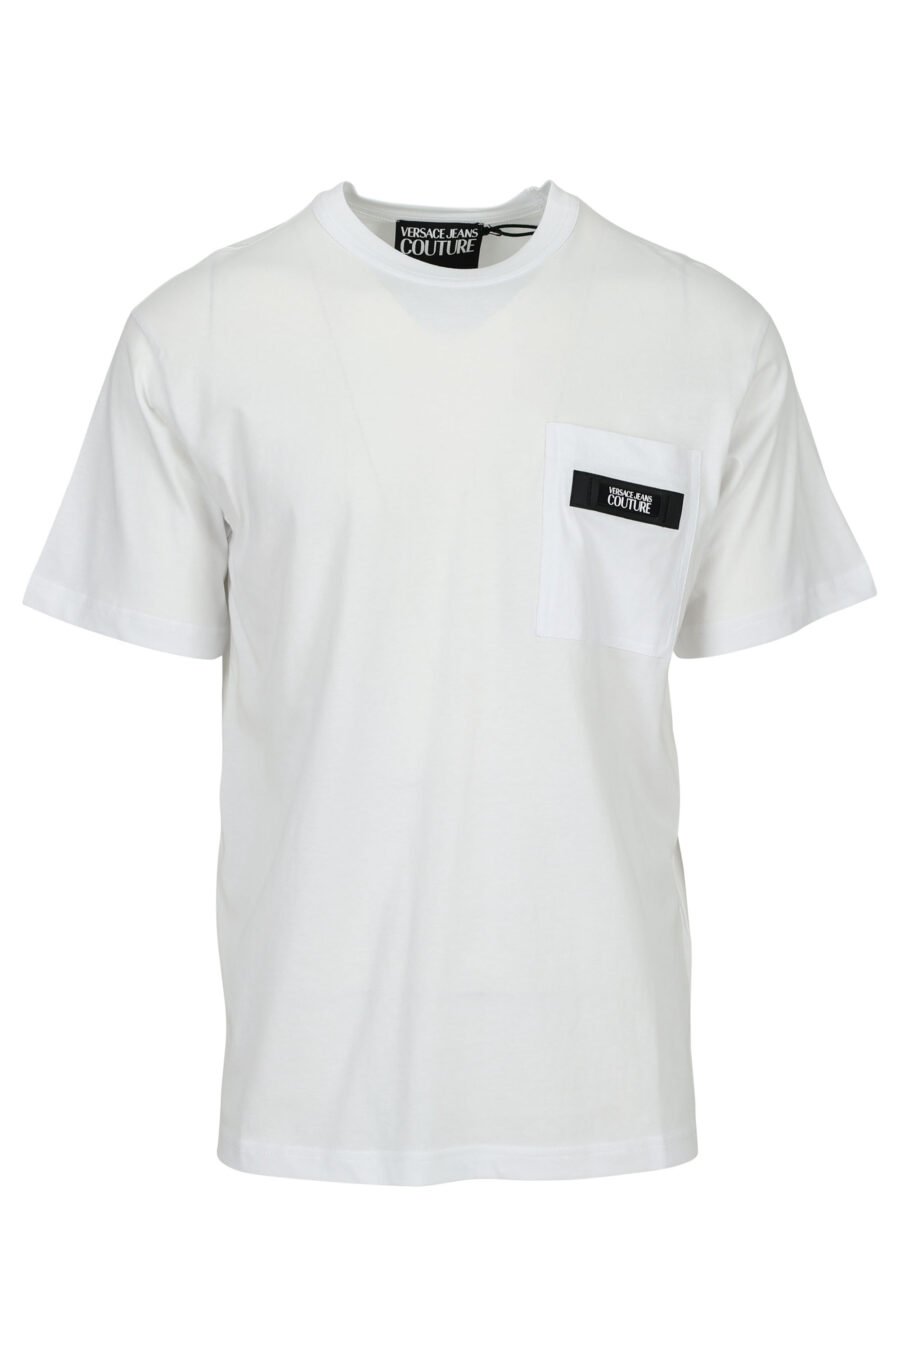 Camiseta blanca con minilogo etiqueta - 8052019597240